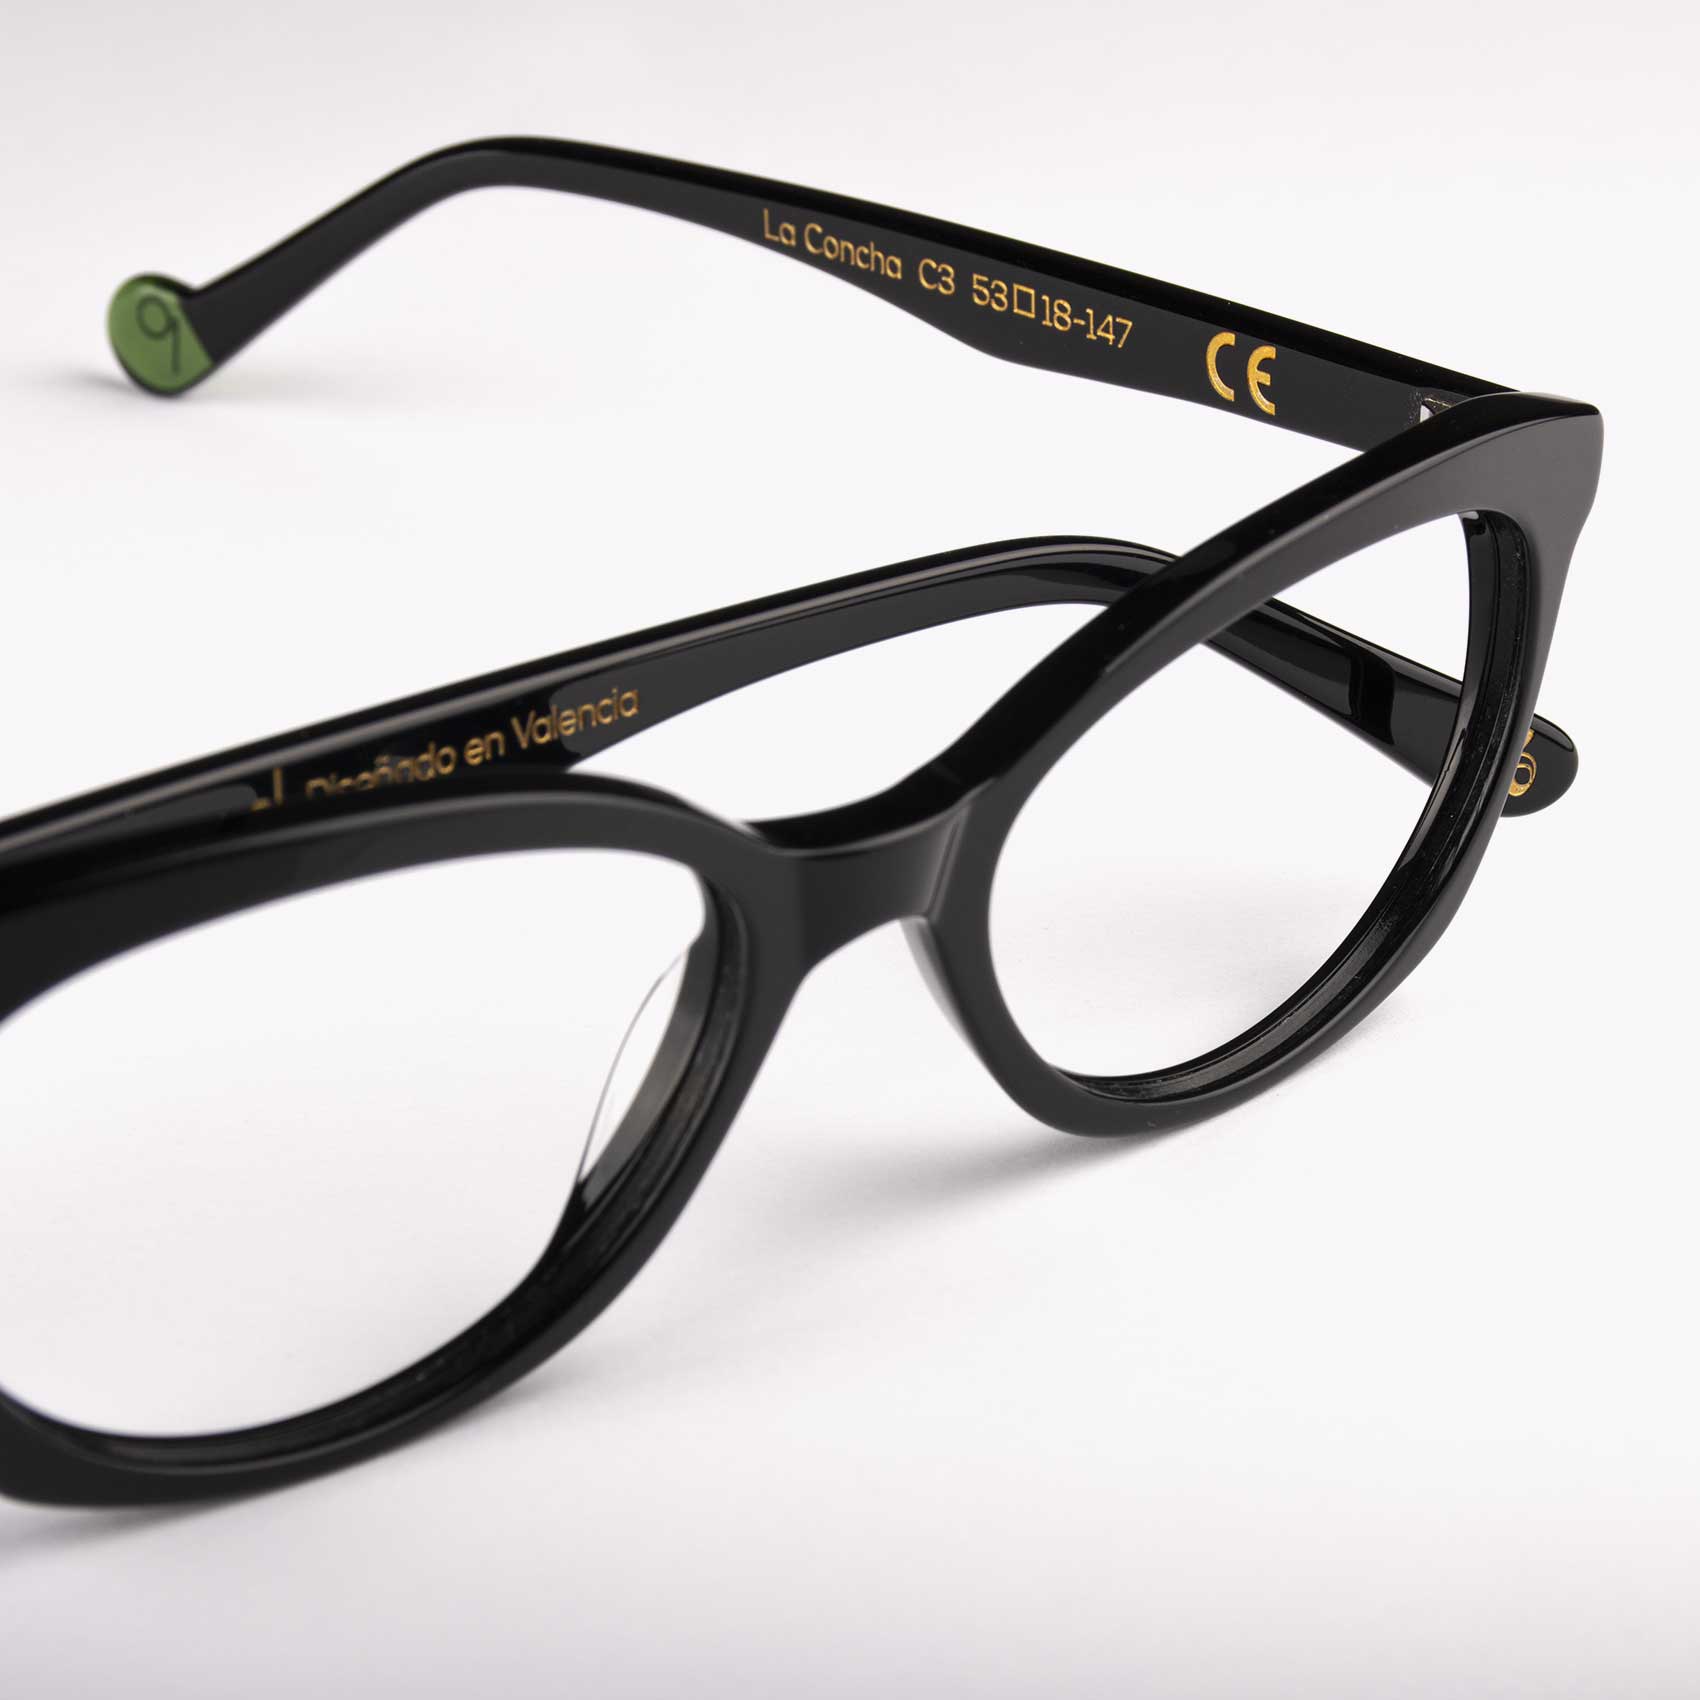 Detalle montura de gafas finas para mujer modelo La Concha por Proud Eyewear